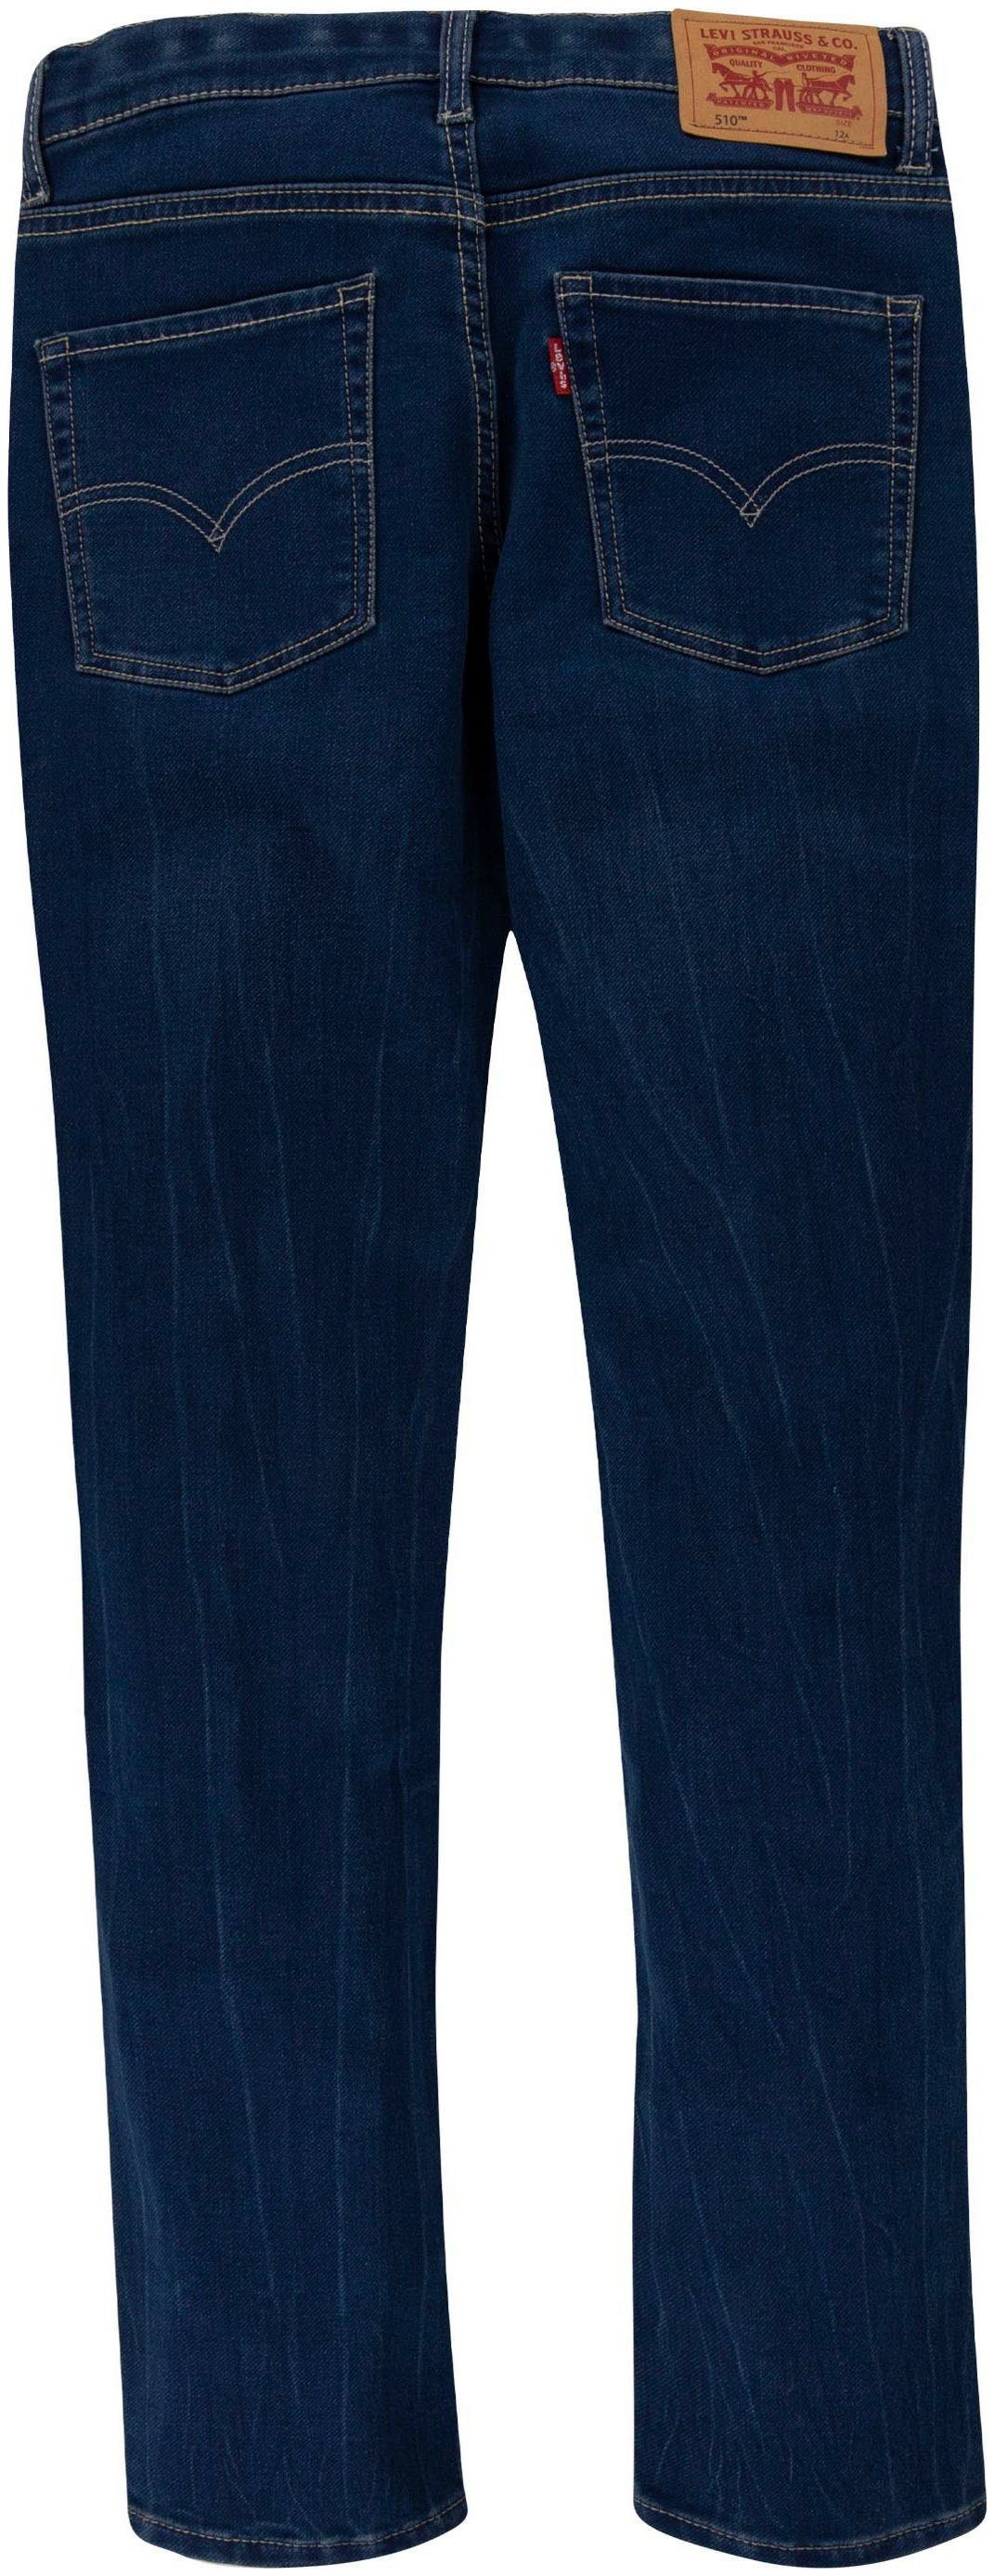 JEANS used BOYS dark FIT Skinny-fit-Jeans denim Levi's® Kids 510 SKINNY indigo for